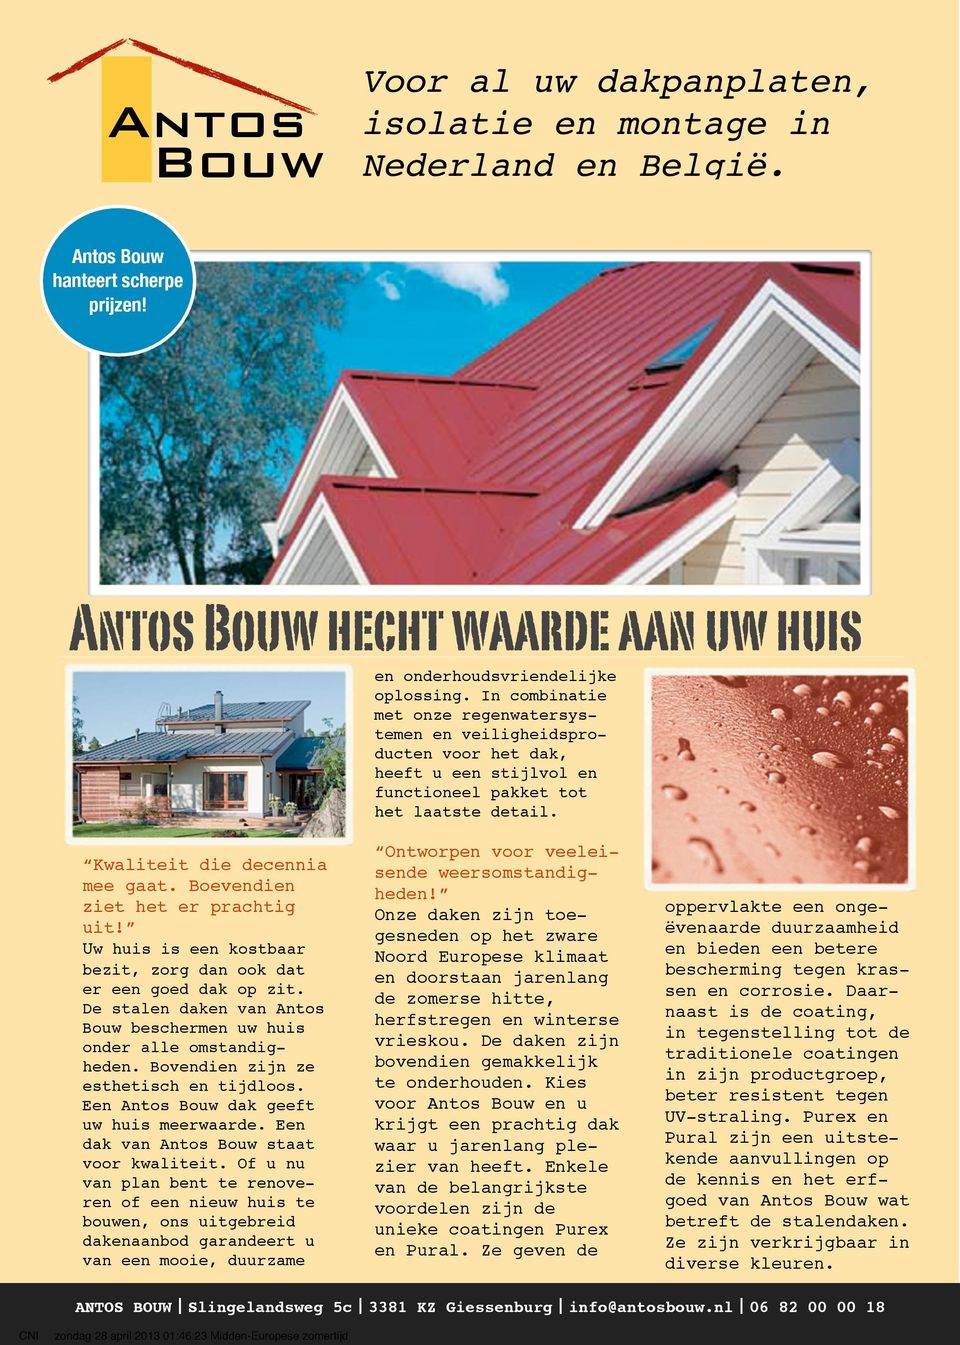 Boevendien ziet het er prachtig uit! Uw huis is een kostbaar bezit, zorg dan ook dat er een goed dak op zit. De stalen daken van Antos Bouw beschermen uw huis onder alle omstandigheden.